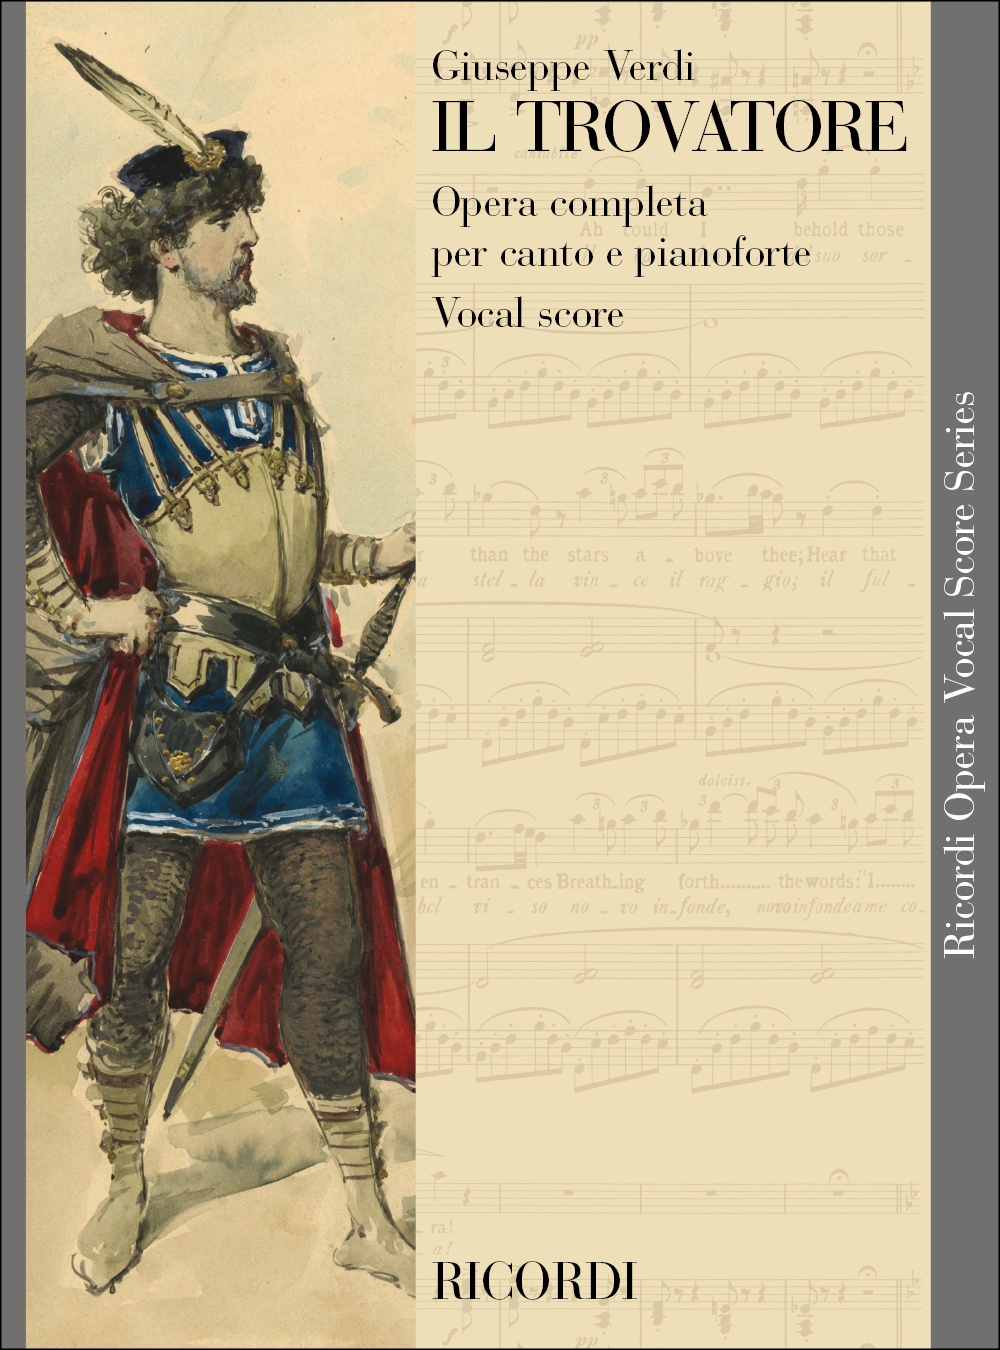 Giuseppe Verdi: Il trovatore: Voice: Vocal Score